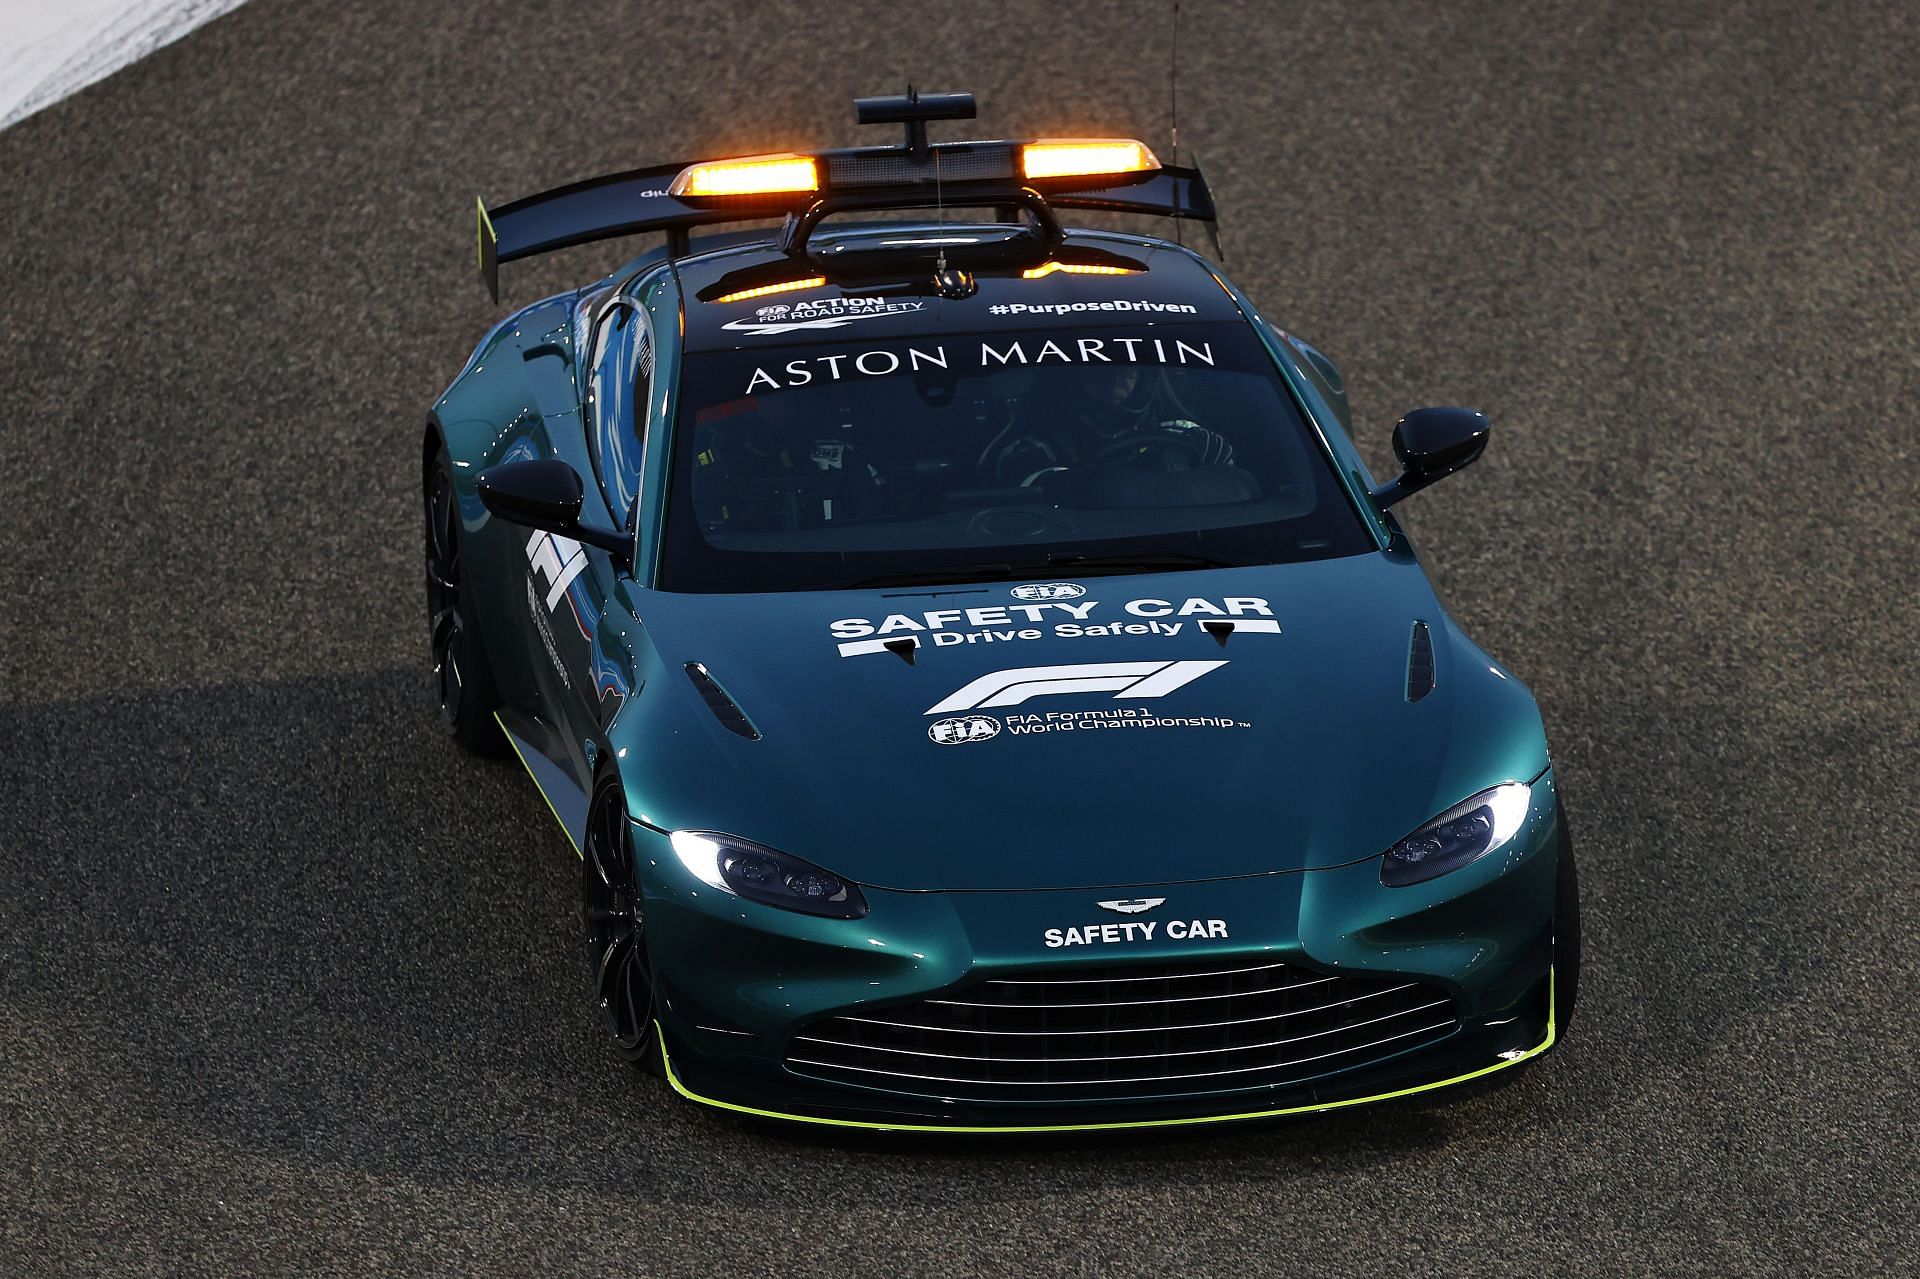 The Aston Martin FIA Safety Car